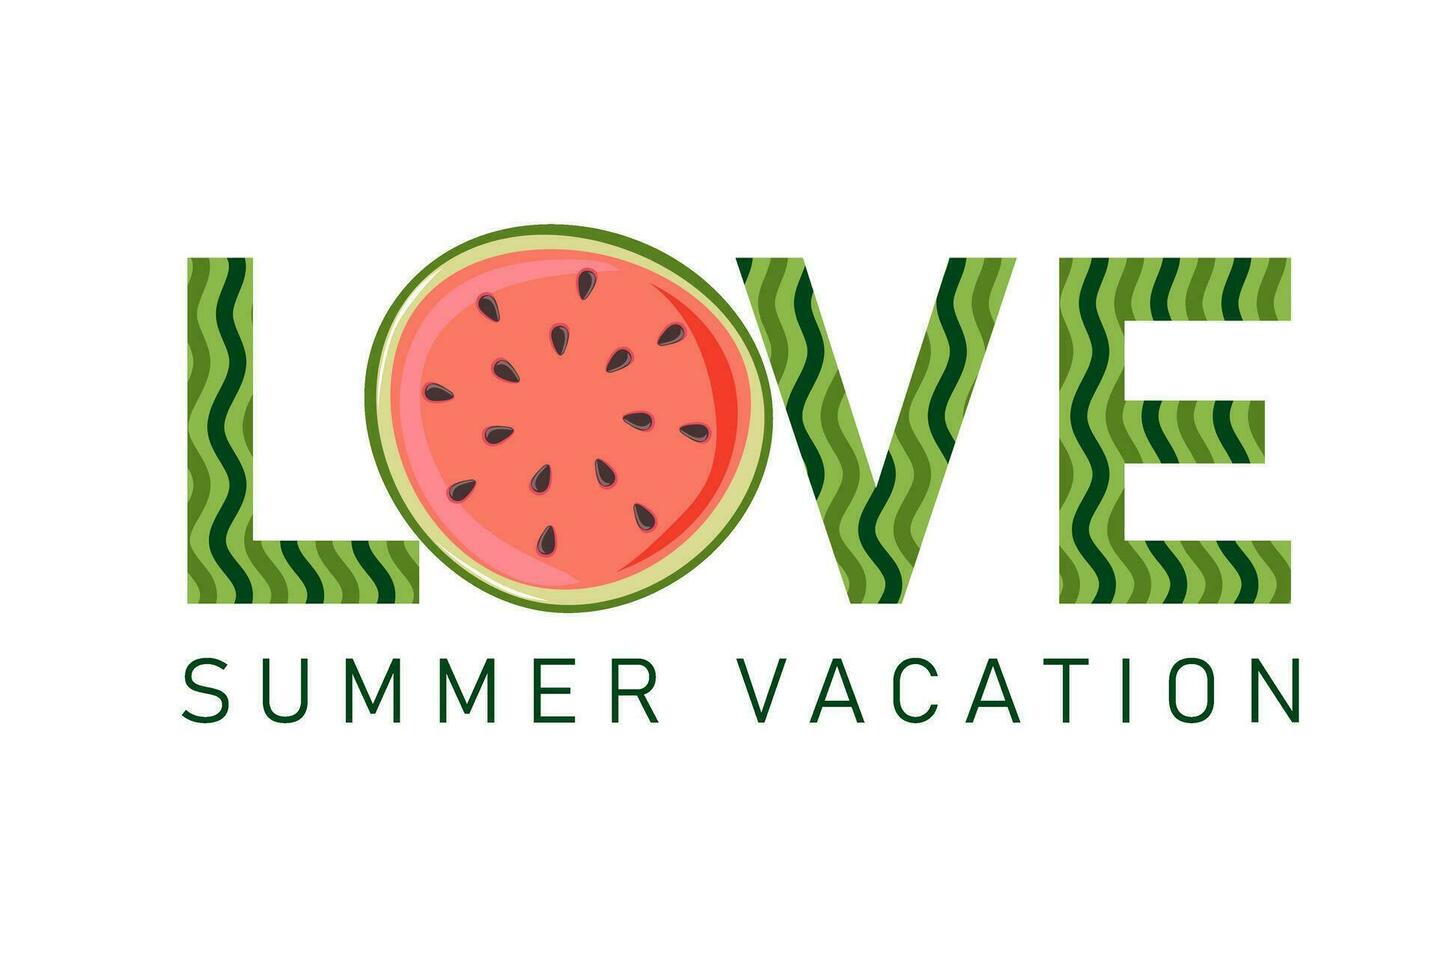 liefde zomer vakantie. watermeloen plak met rood vlees en zwart zaden. zomer ontwerp voor poster, banier, t shirt, kaart, folder vector